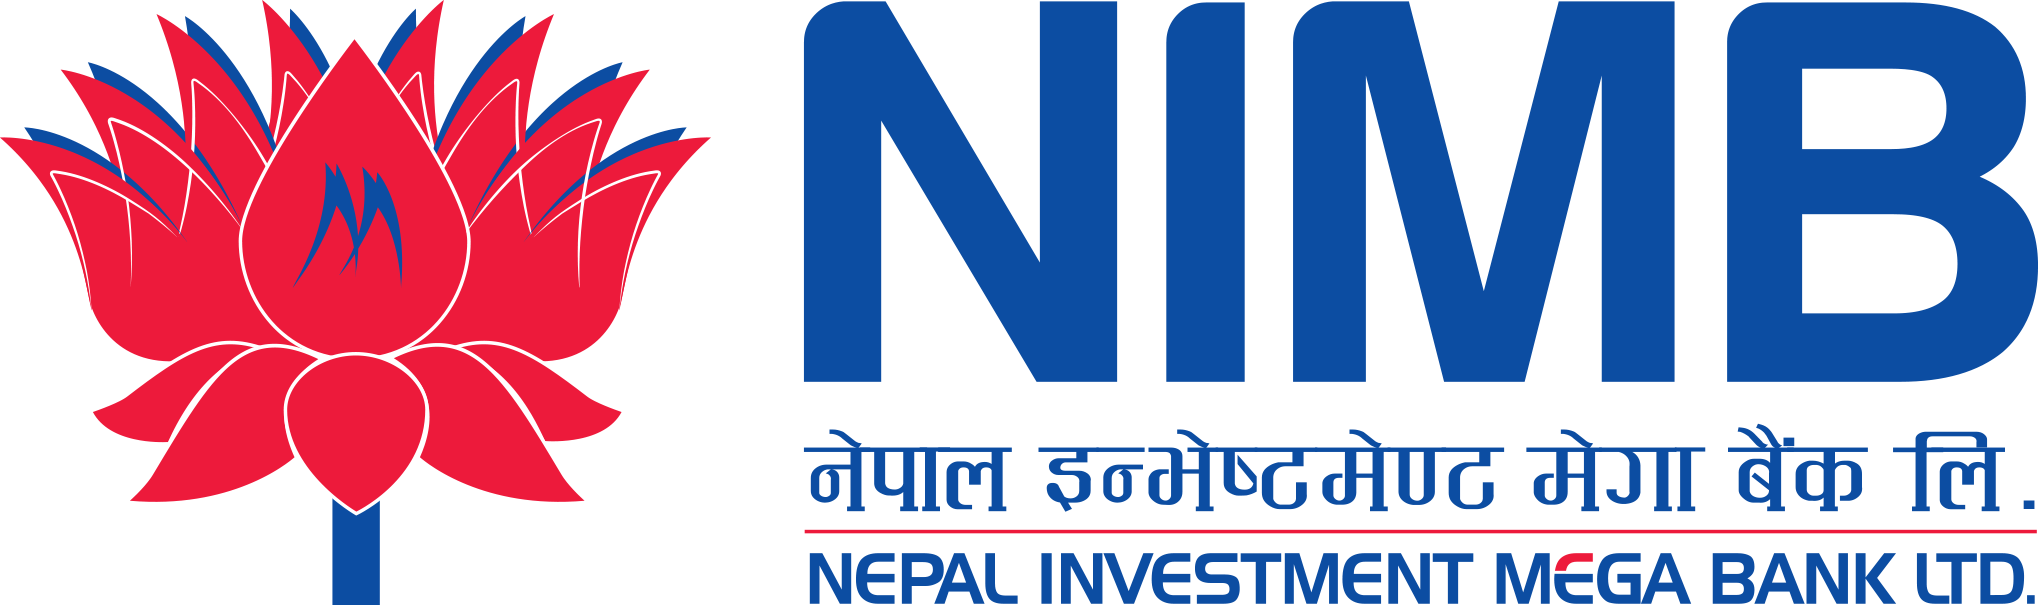 नेपाल इन्भेष्टमेण्ट मेगा बैंकले ऋणपत्र निष्कासन गर्ने, बोर्डबाट पायो स्वीकृति